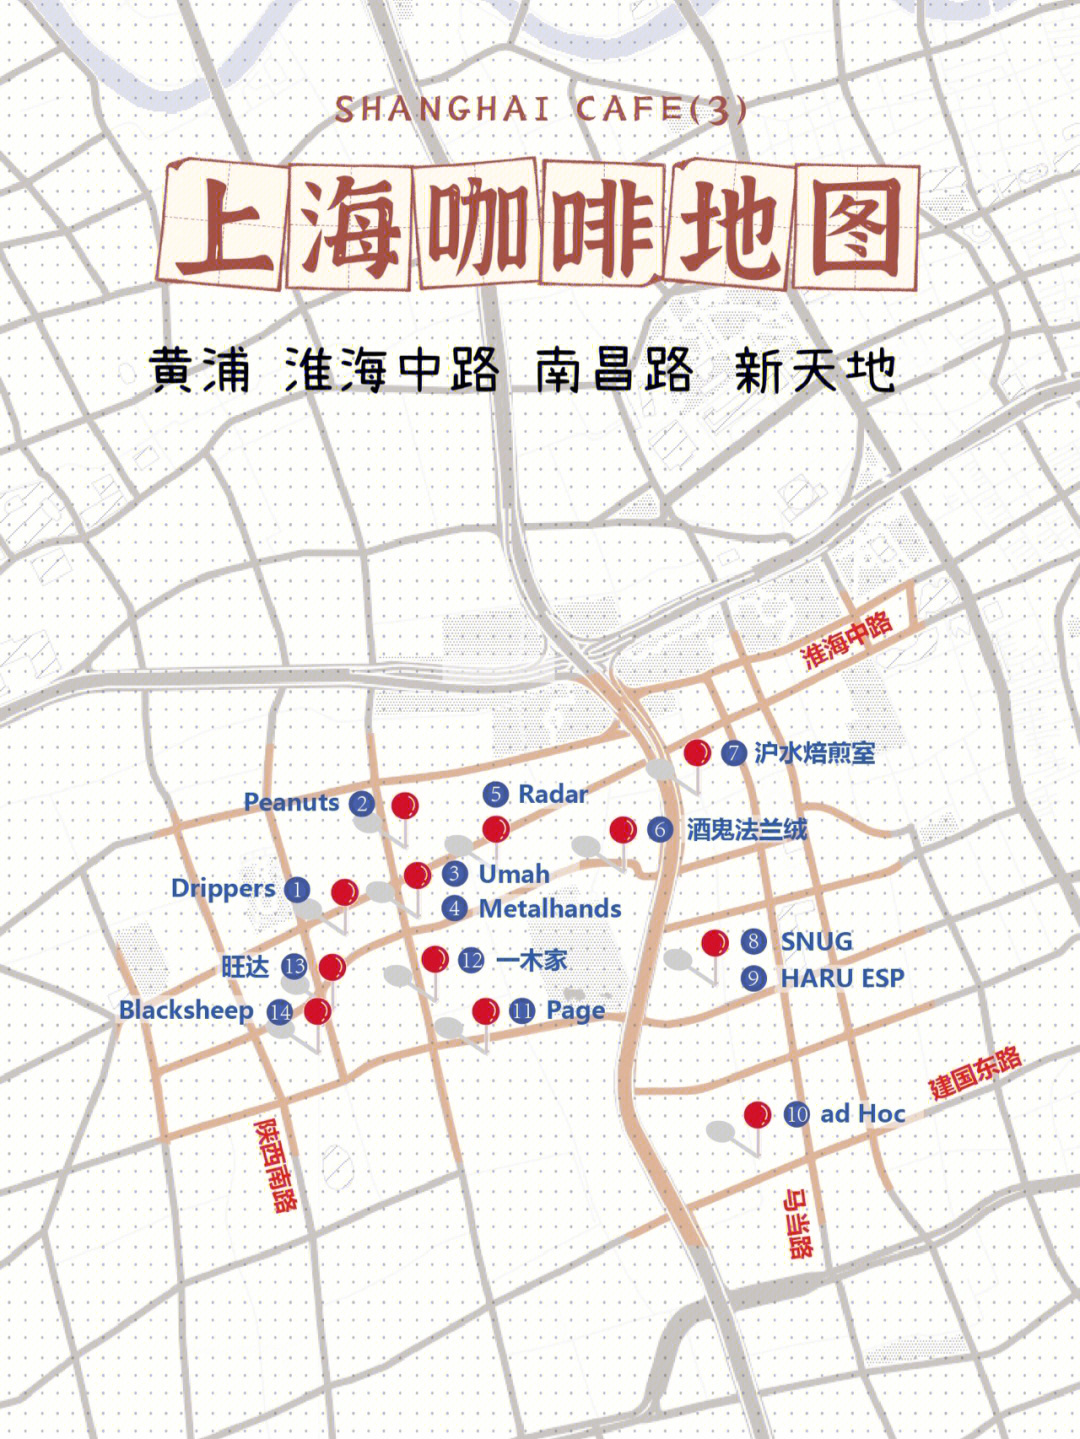 上海原卢湾区地图图片